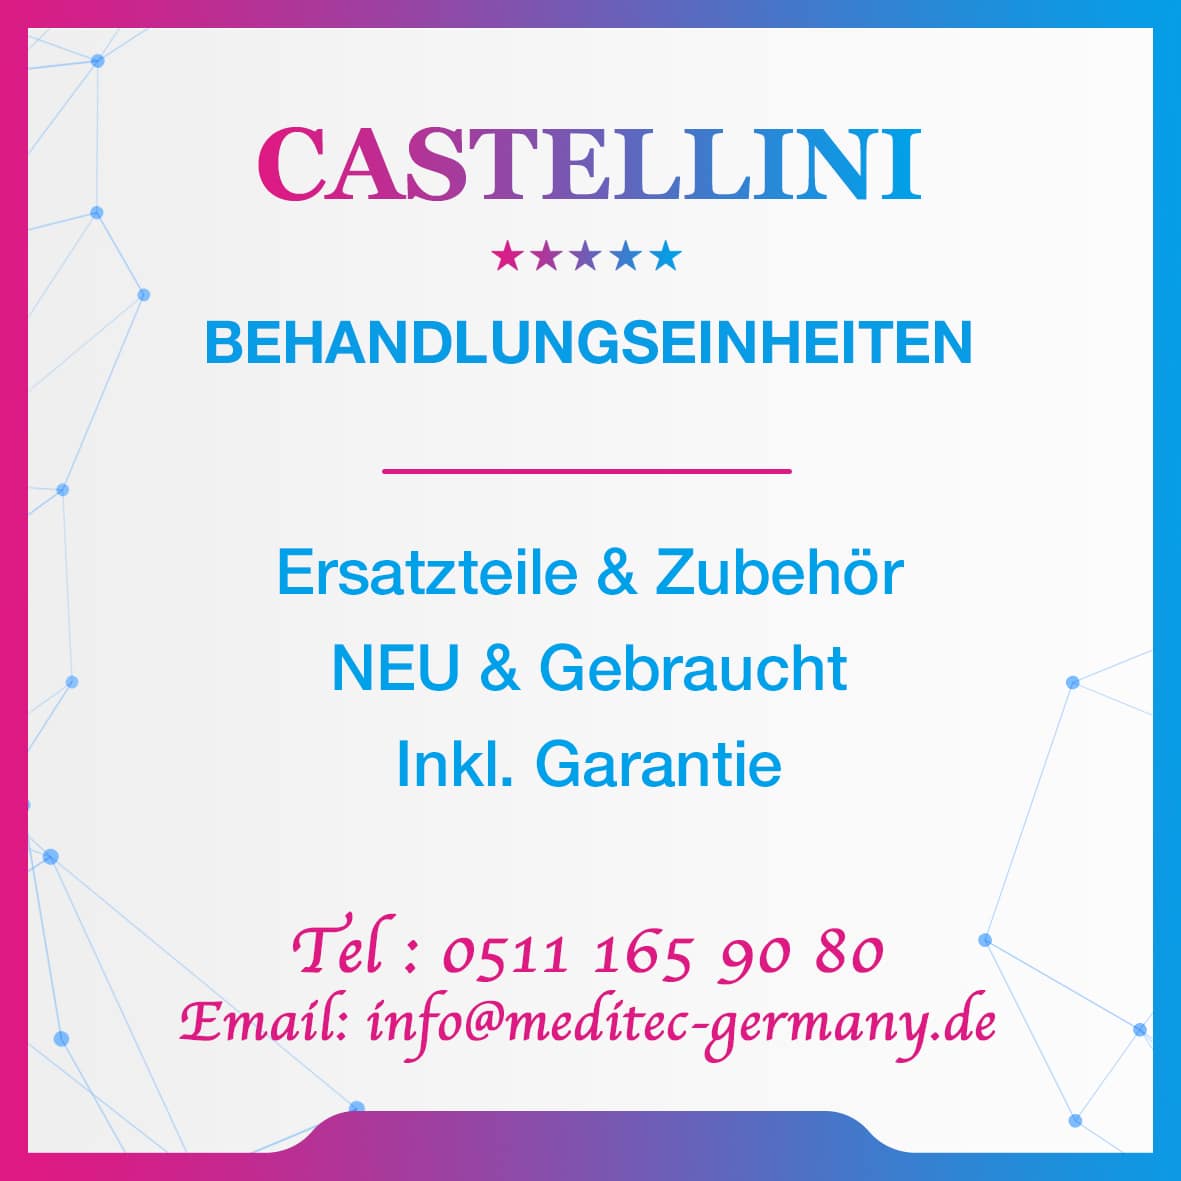 Castellini Behandlungseinheiten